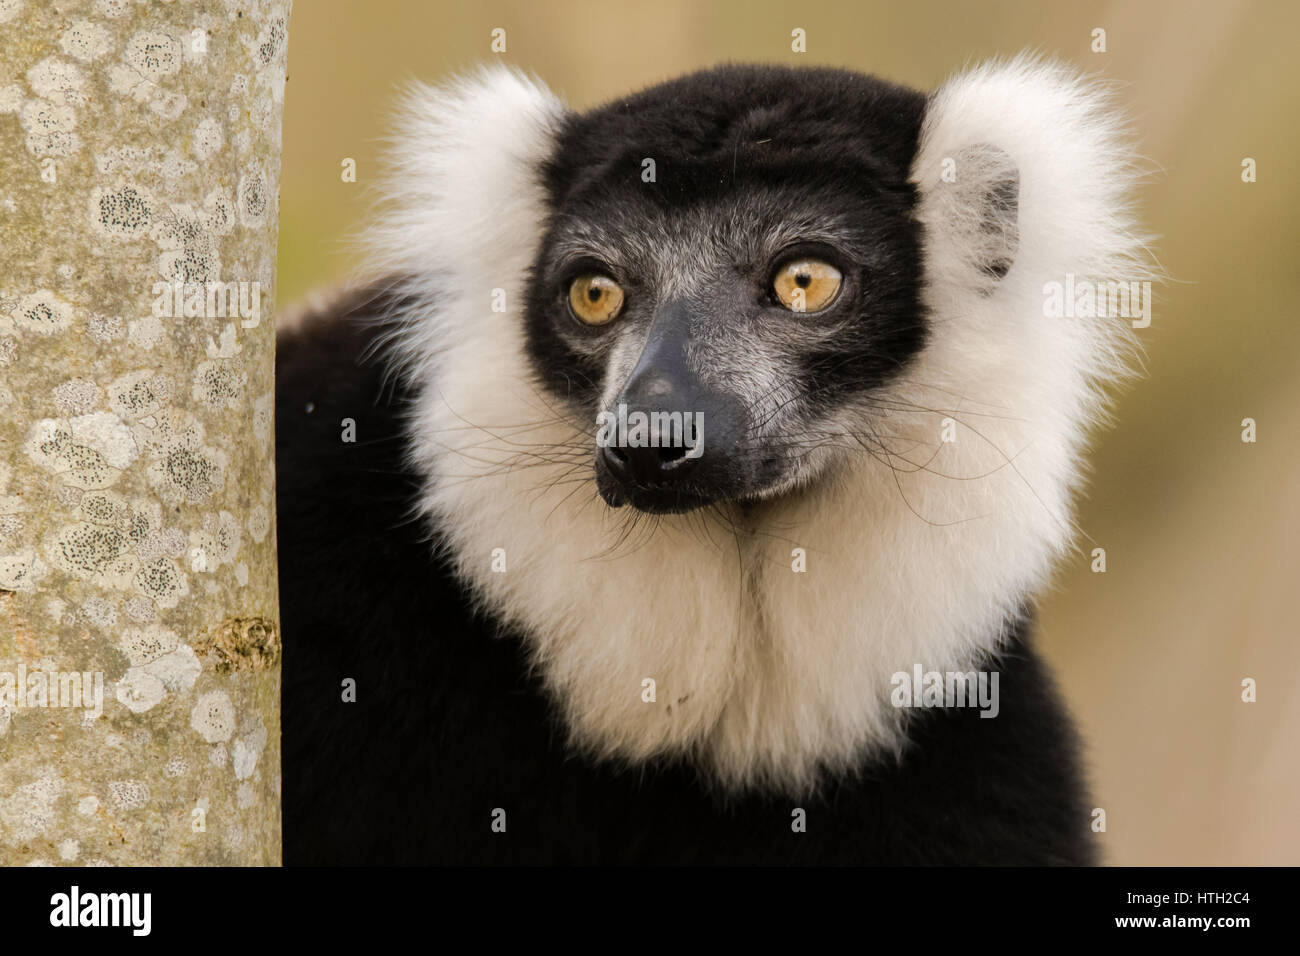 En blanco y negro ruffed lemur (Varecia variegata) vertical. Lemur críticamente amenazadas, endémicas de la isla de Madagascar Foto de stock